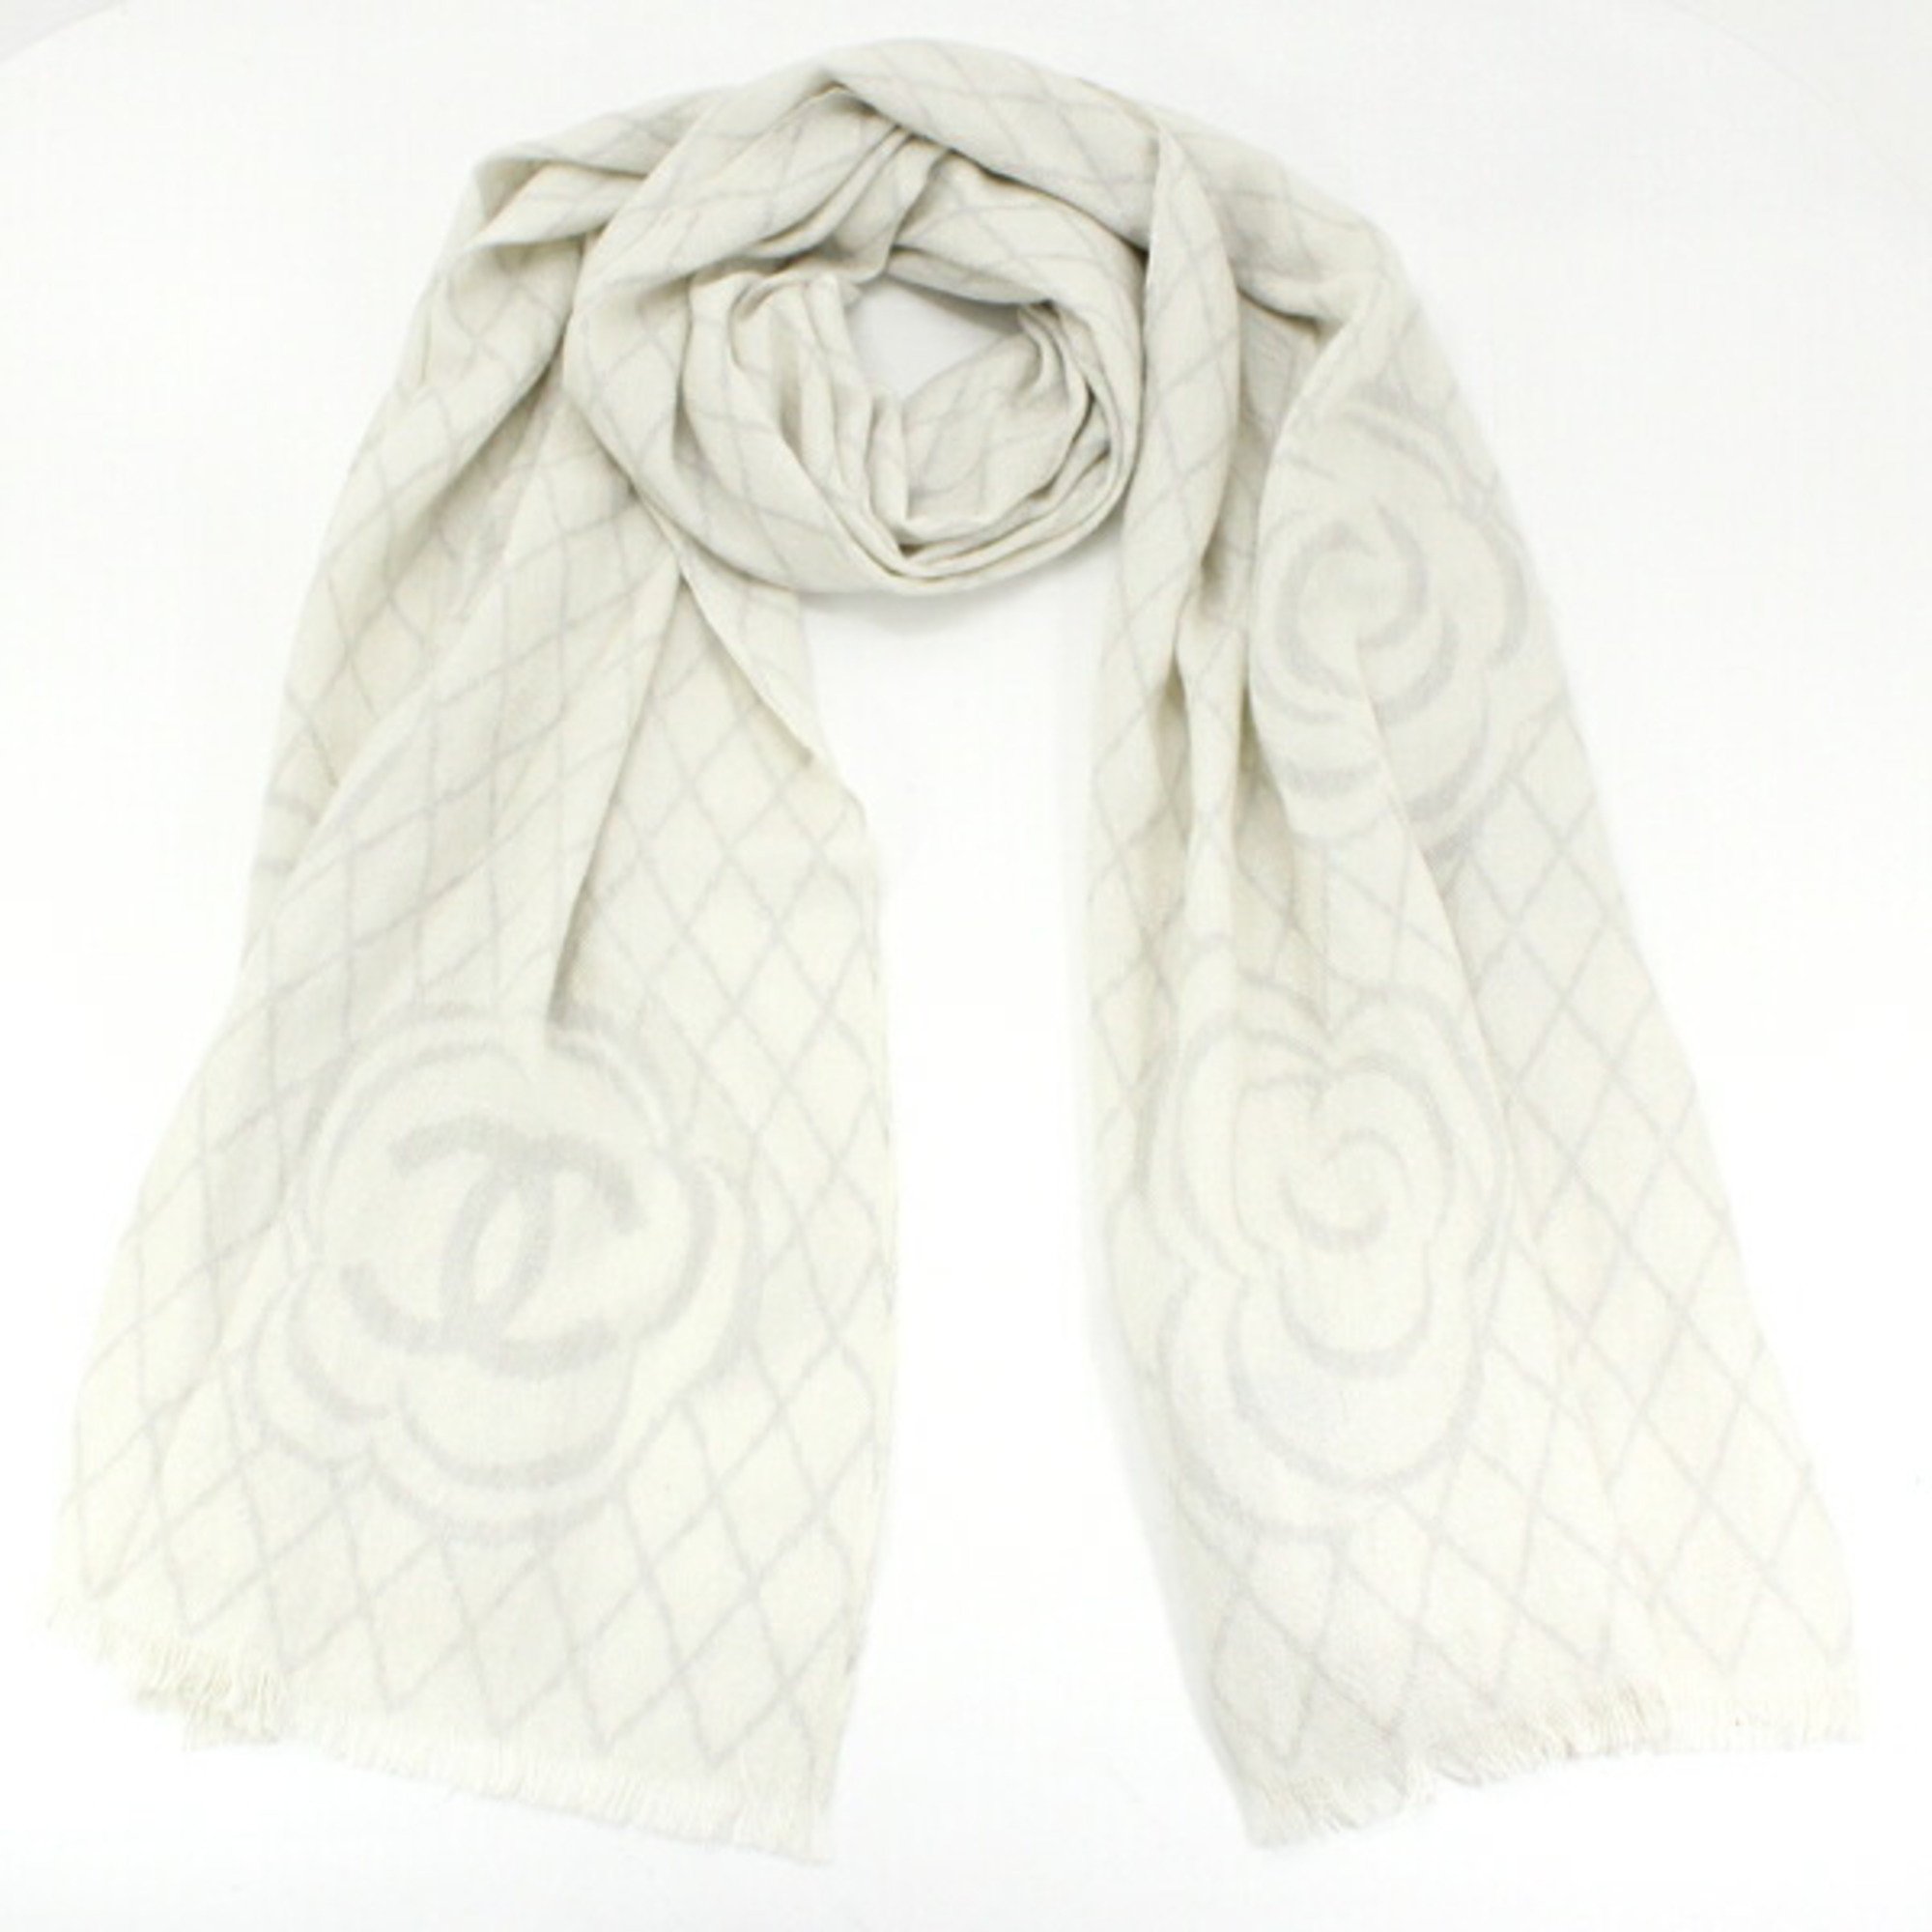 Chanel Shawl Stole Coco Mark Camellia Cashmere Silk Off-white x Gray 200cm Scarf Women's CHANEL T4762